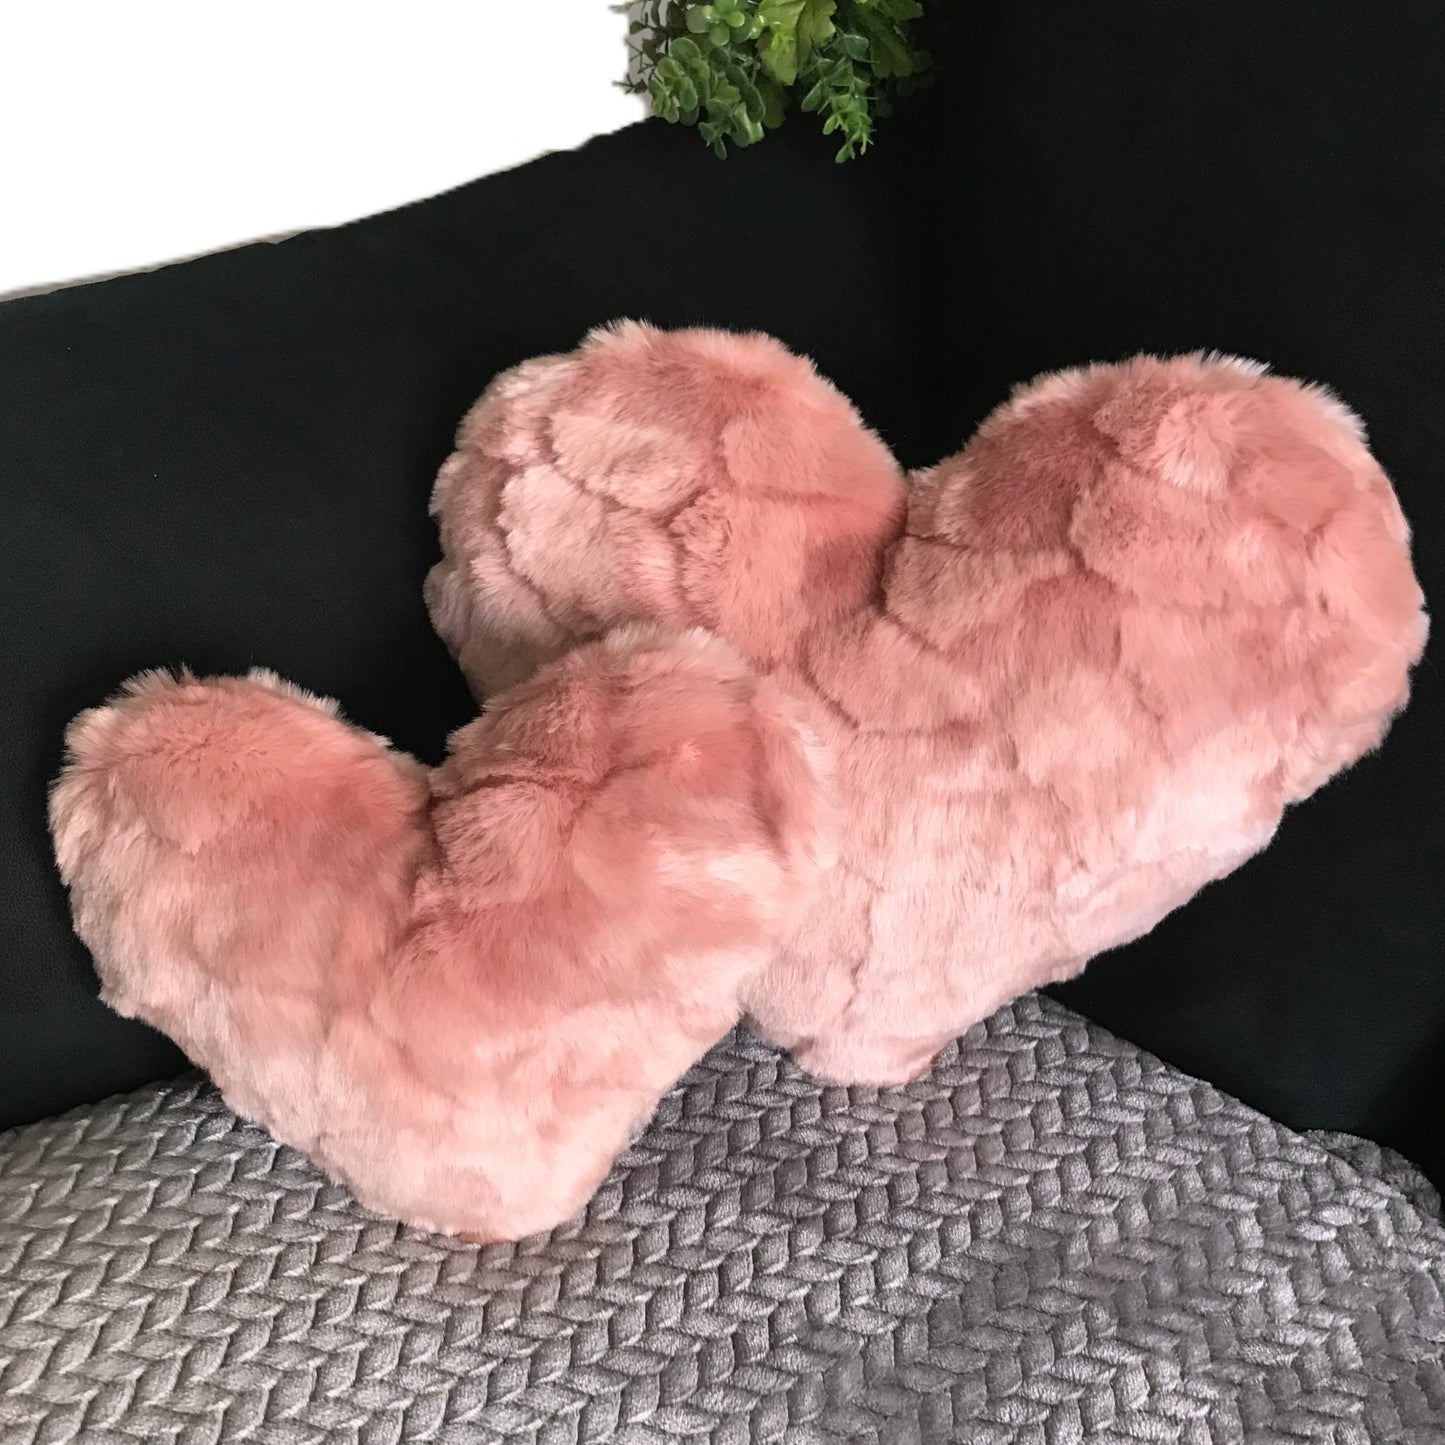 Minky Fur Heart Pillows - Set of 2 - Blush Pink